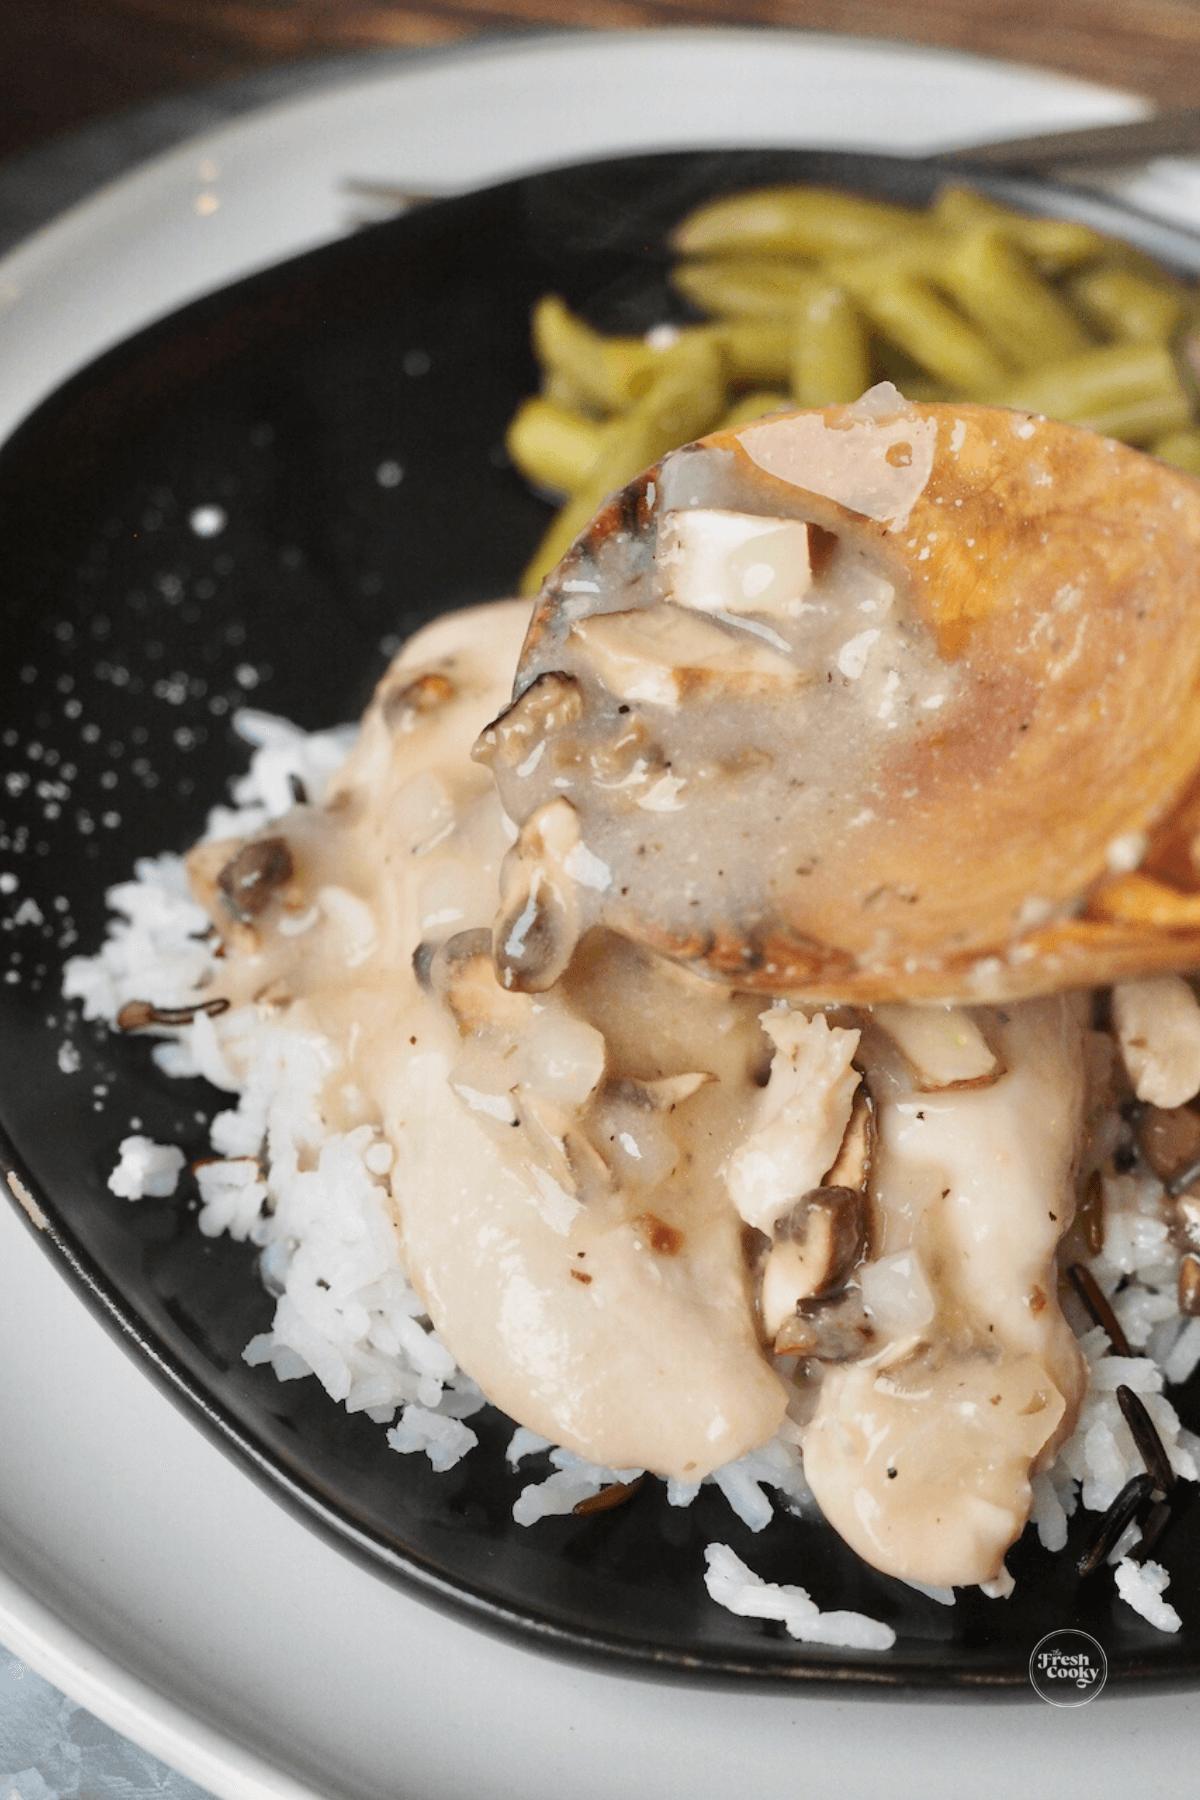 Spooning on chicken gravy over cracker barrel chicken and rice recipe.